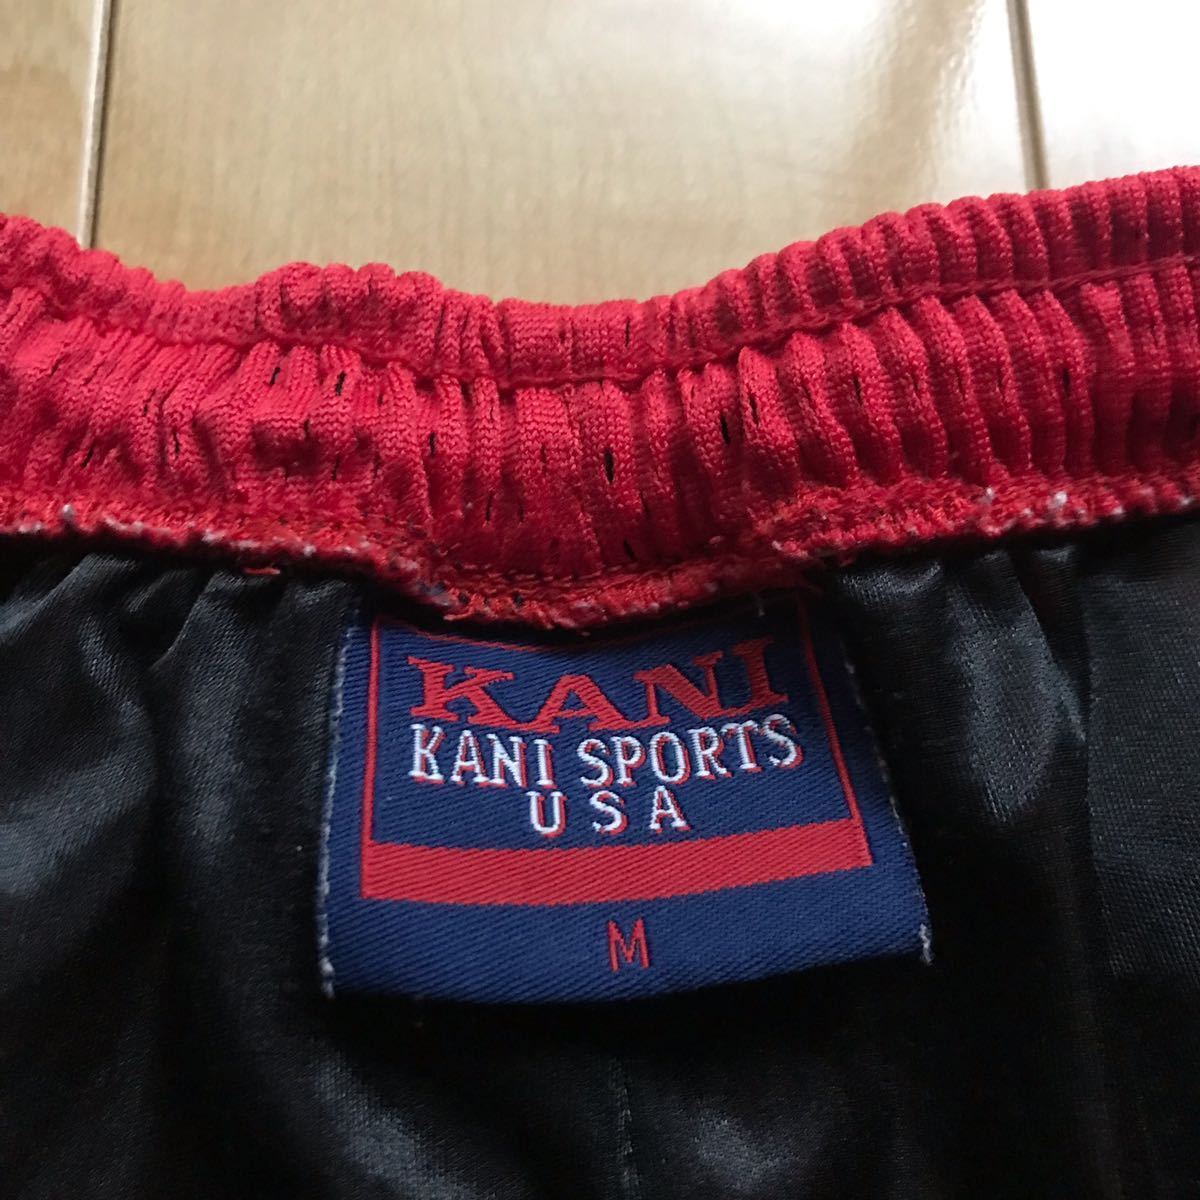 レア KANIスポーツ スポーツウェア 上下セット セットアップ 550-6-43 メンズ M レッド×ネイビー ロゴ刺繍_画像7